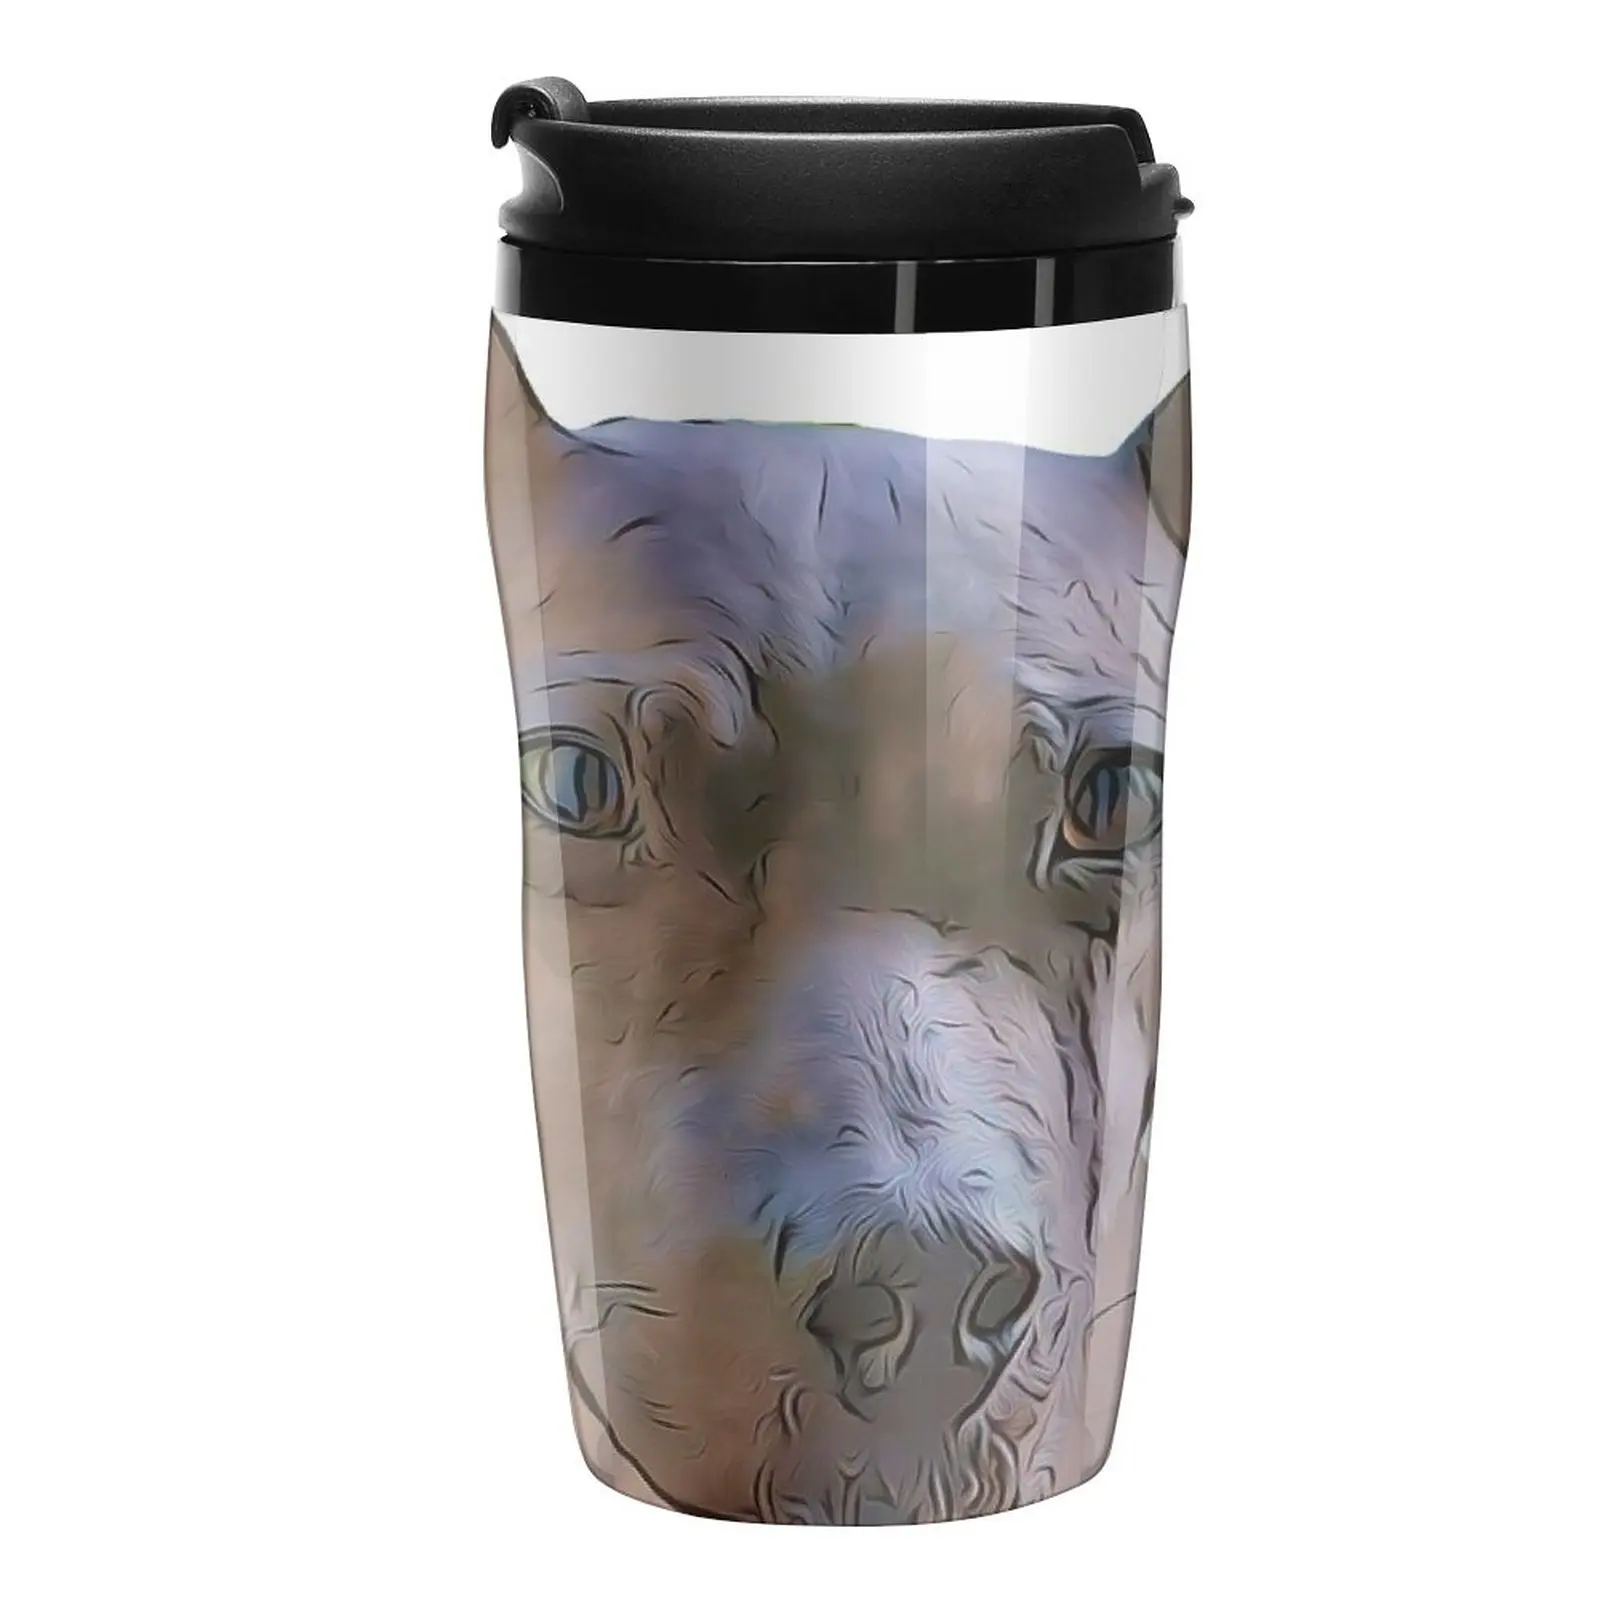 האמריקאי החדש שיער טרייר כלב מצויר עיצוב נסיעות ספל קפה קפה ותה קפה אביזר כוסות קפה - 0